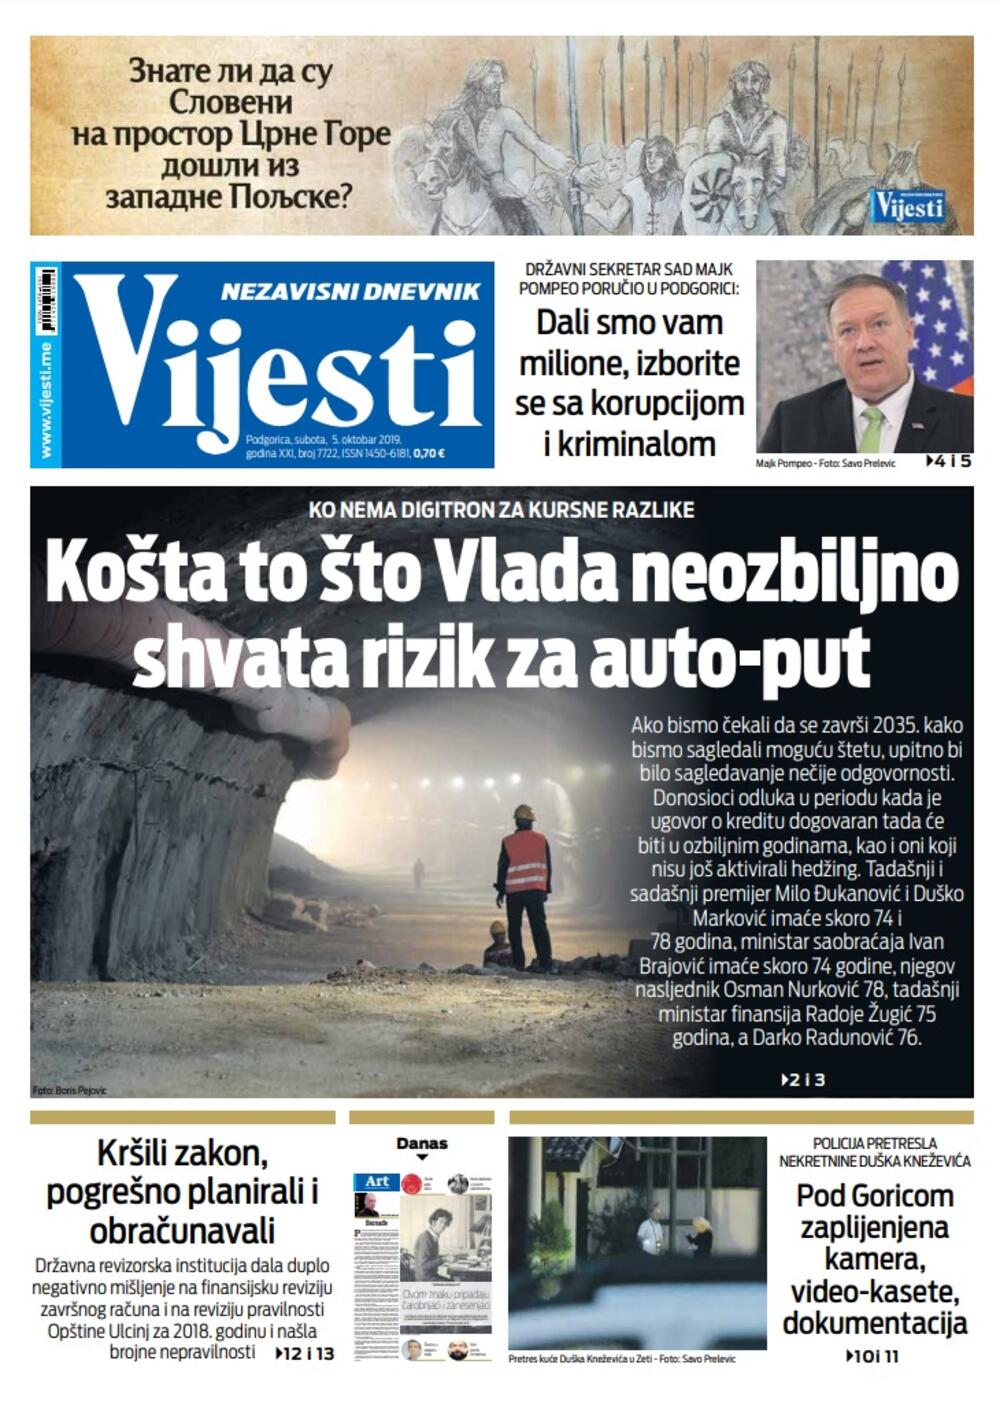 Naslovna strana "Vijesti" za 5. oktobar, Foto: Vijesti